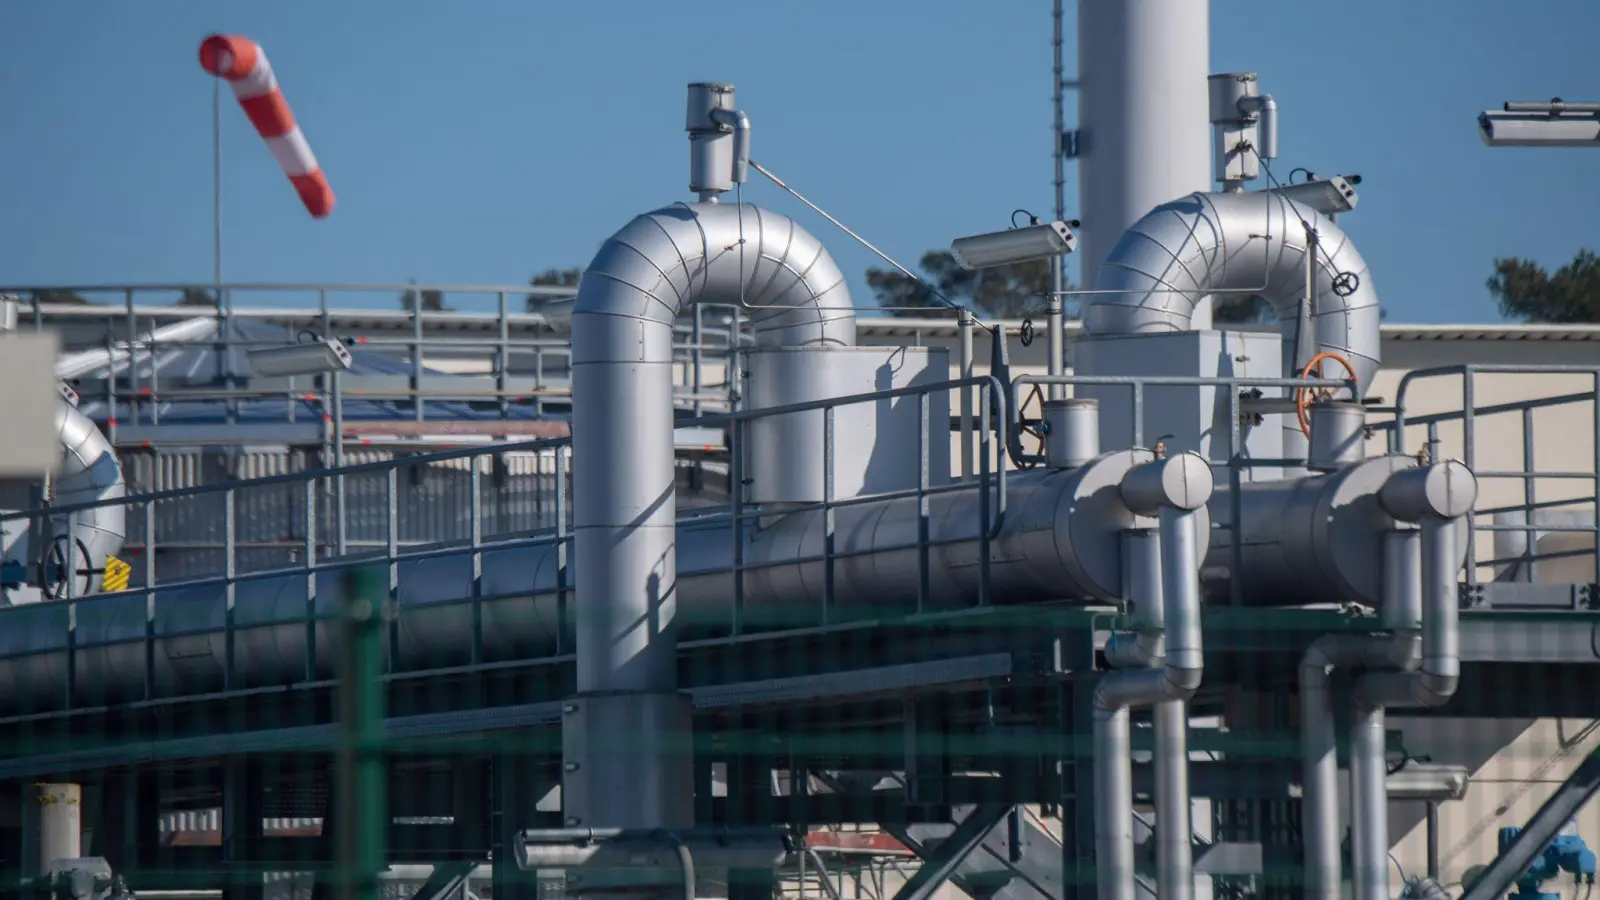 Rohrsysteme und Absperrvorrichtungen in der Gasempfangsstation der Ostseepipeline Nord Stream 1 in Lubmin. (Foto: Stefan Sauer/dpa)